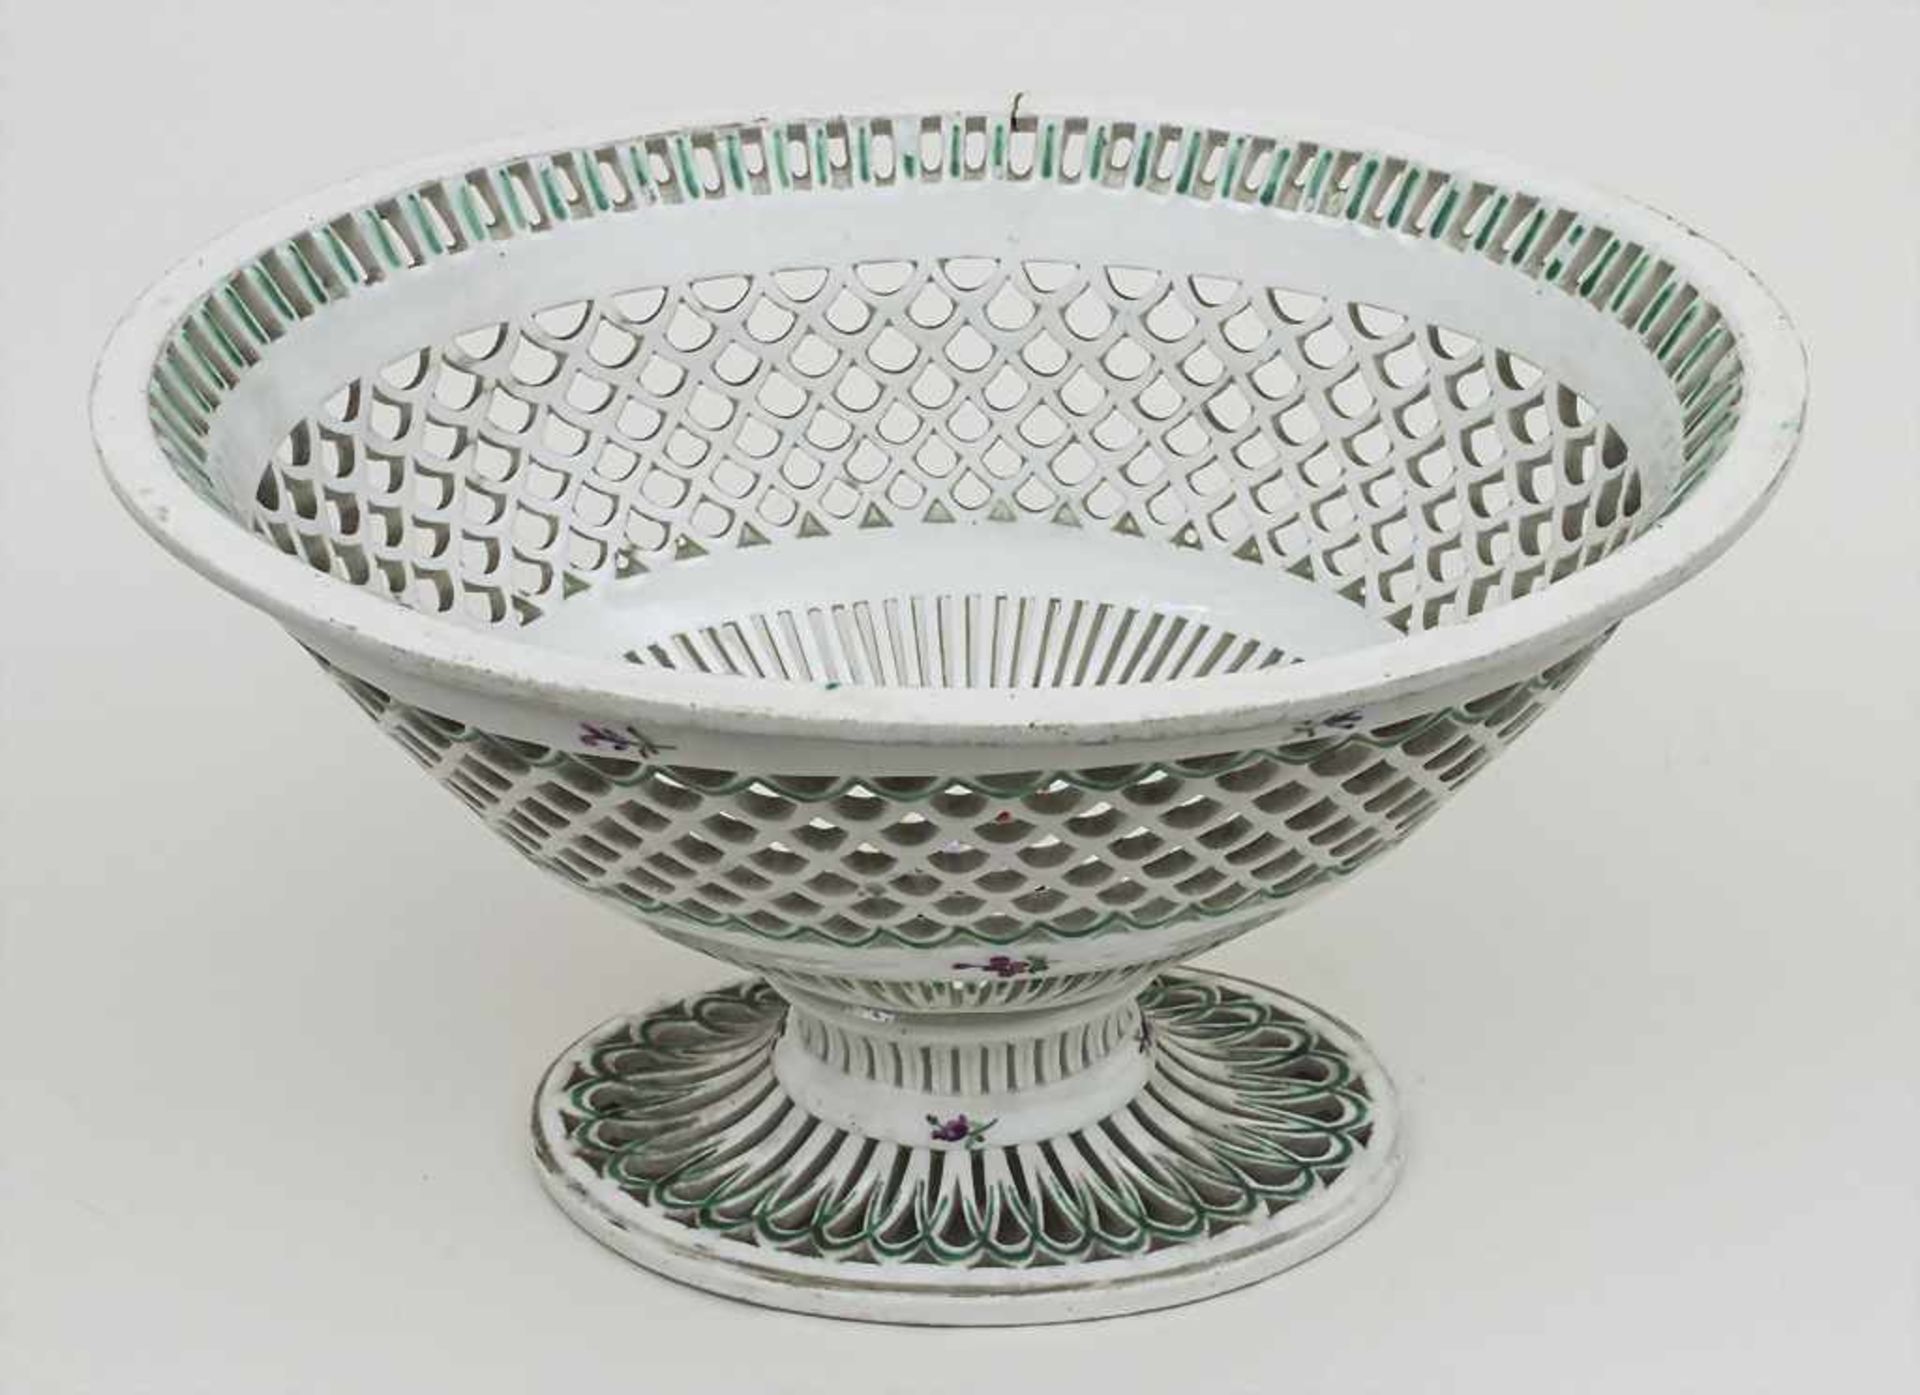 Ovale korbwandige Fußschale / An oval footed bowl, Wien, Ende 18. Jh. Material: Porzellan, weiß,